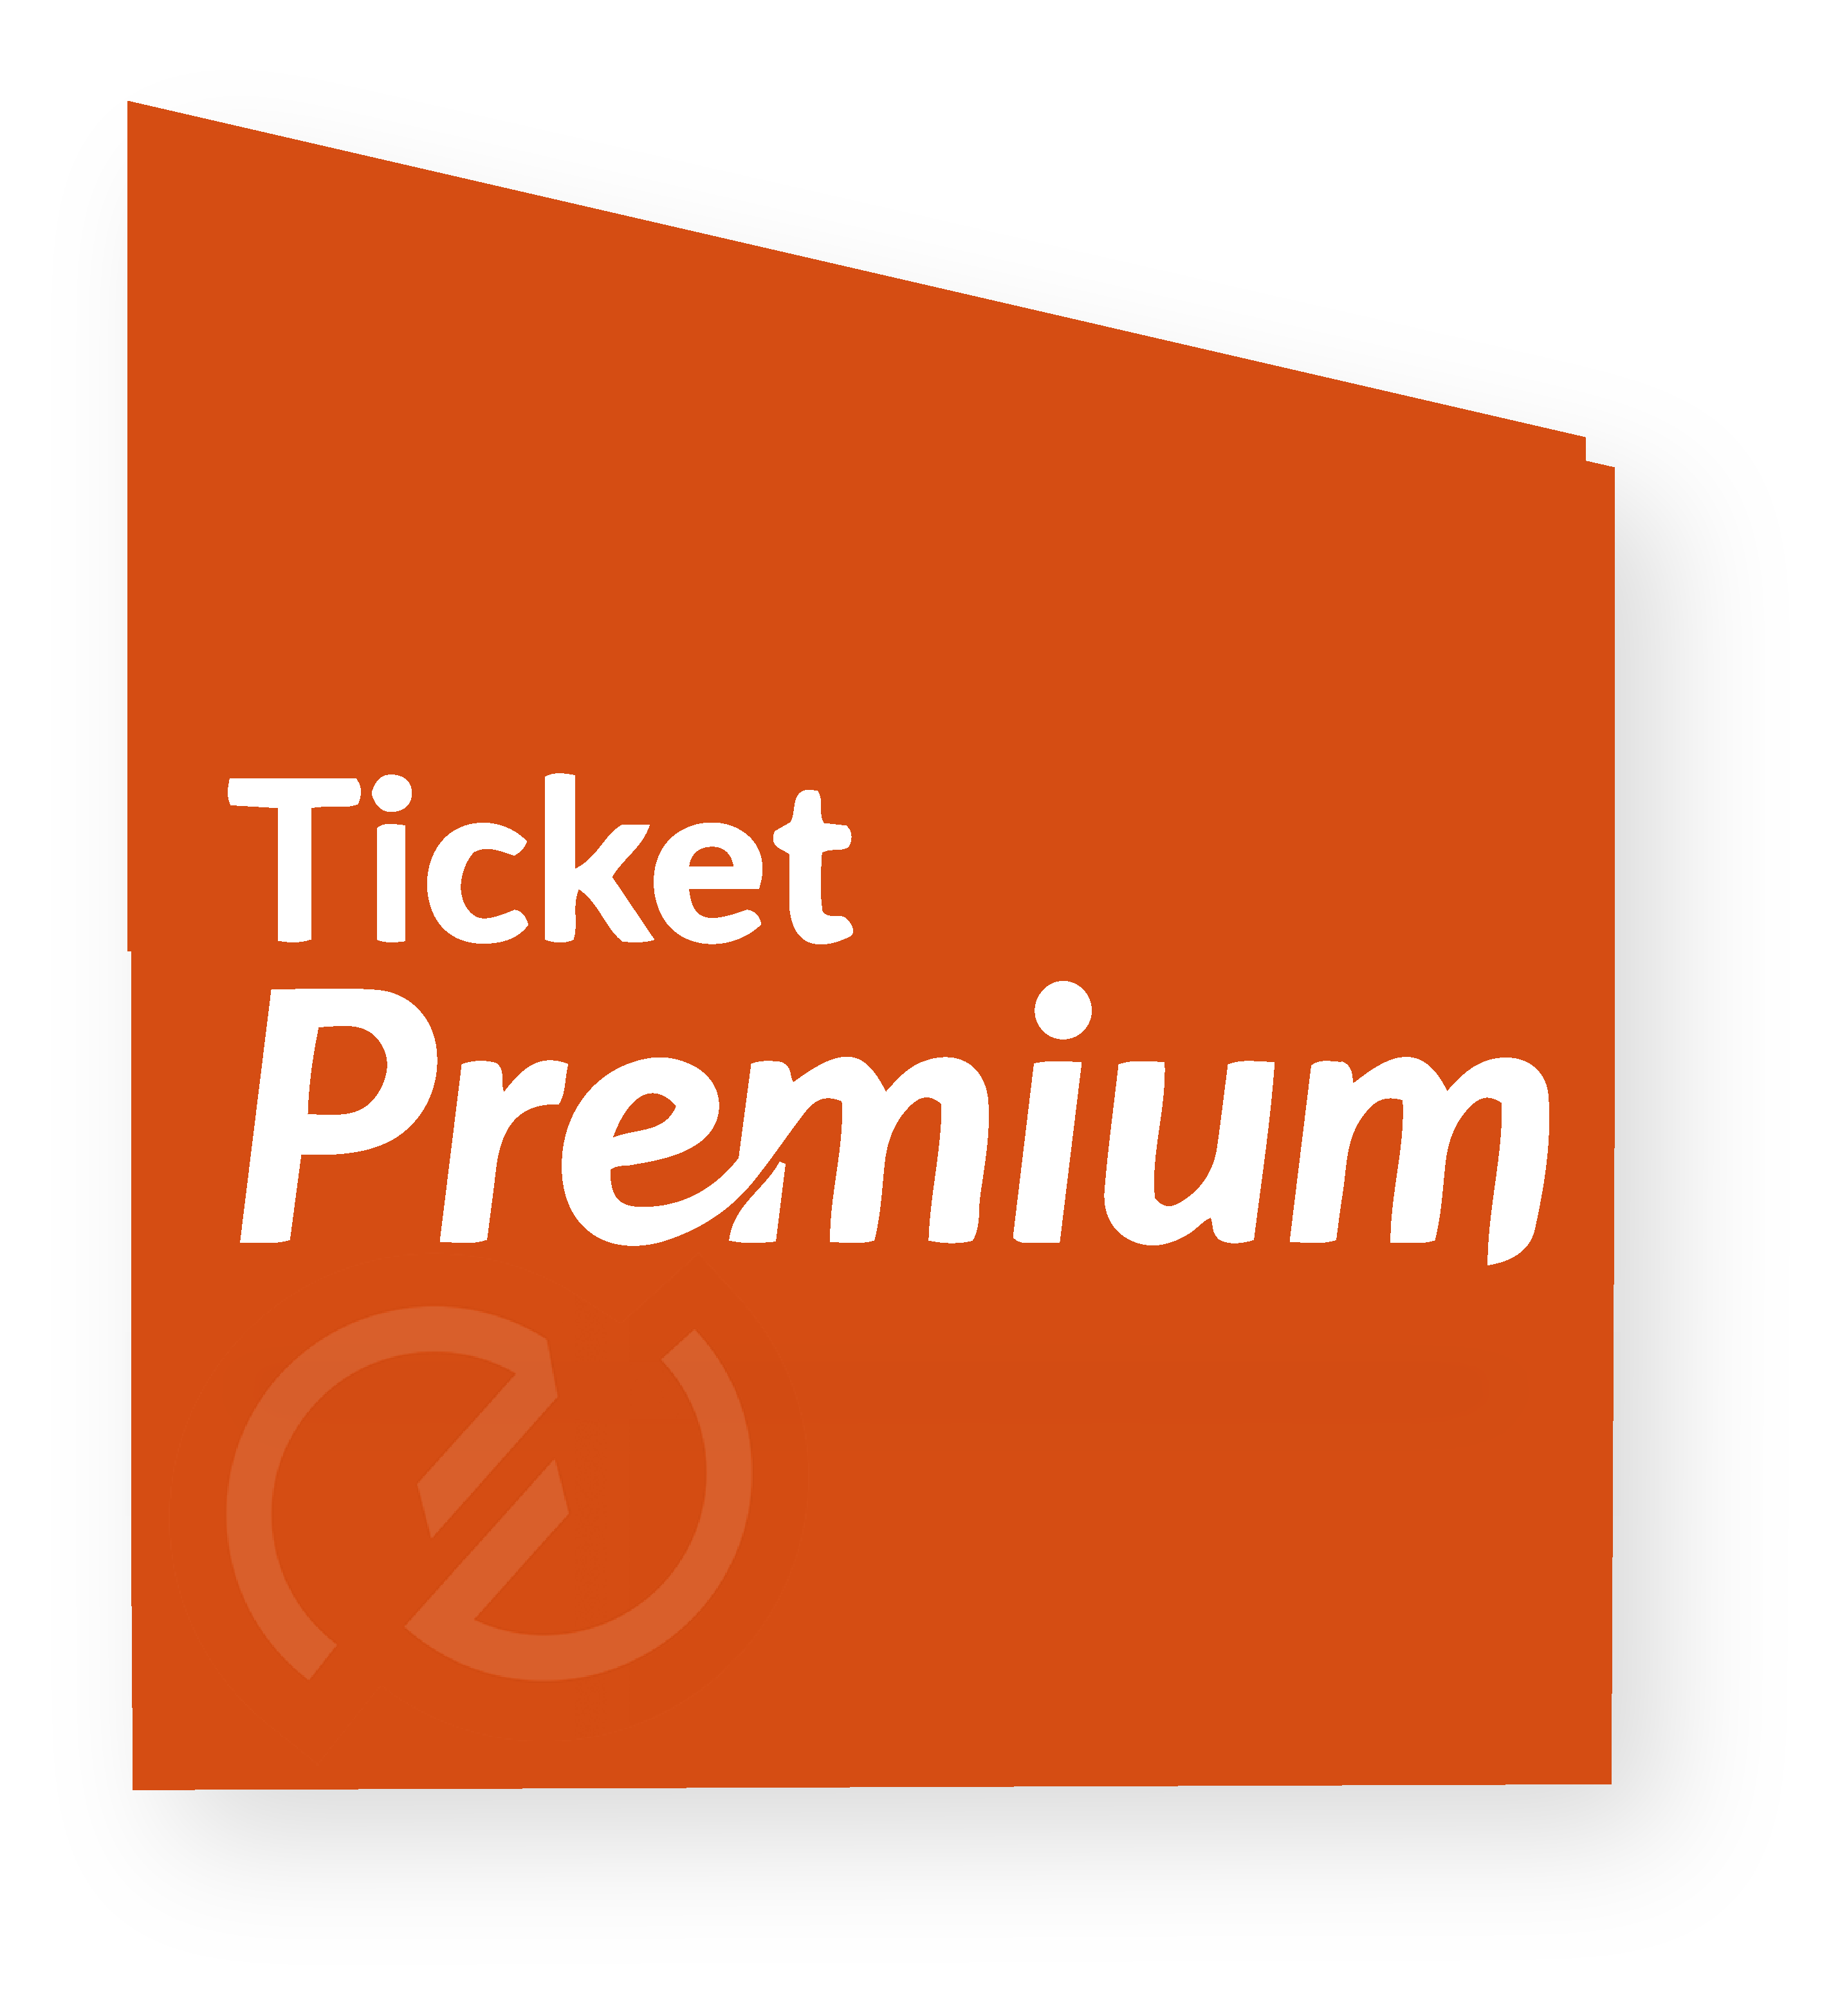 Image logo Ticket Premium